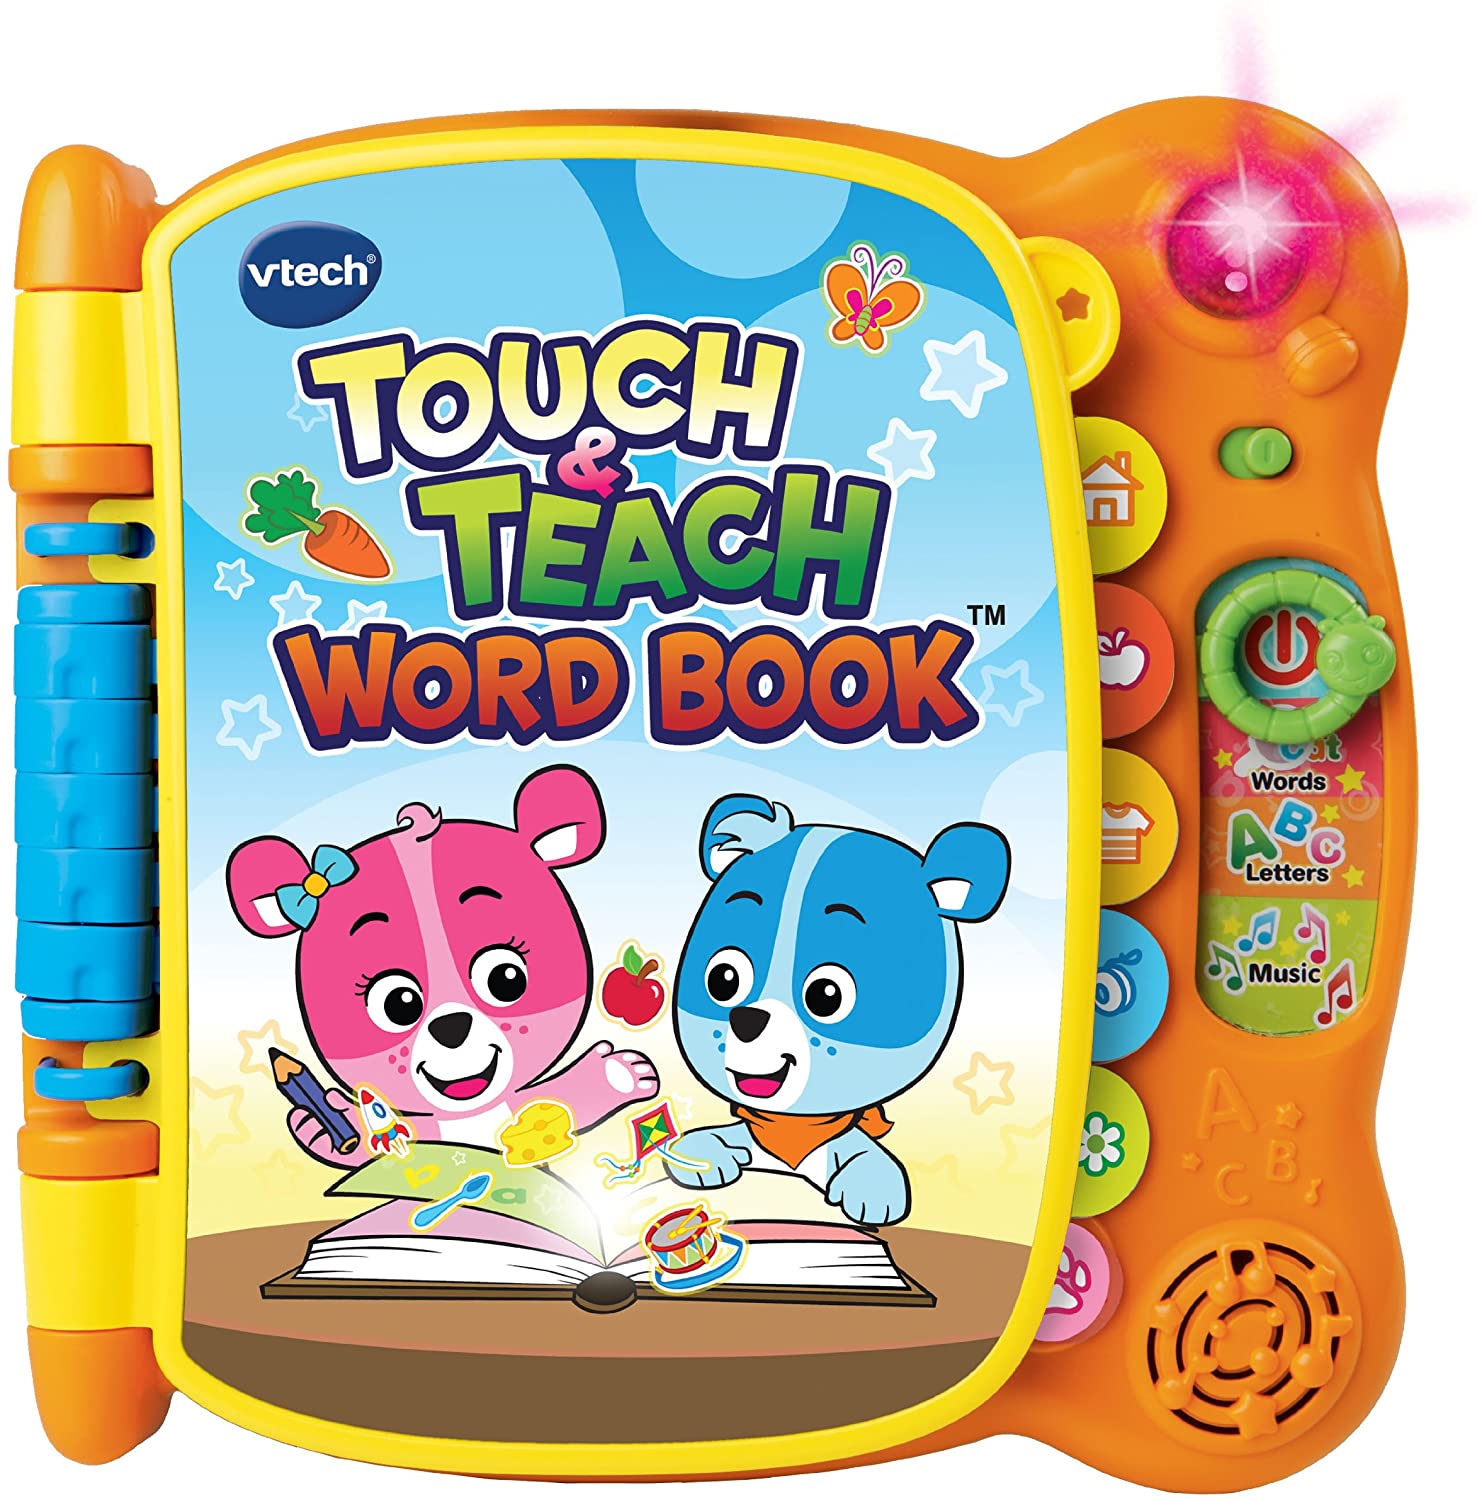 アクティビティ　英単語の練習　VTech Touch & Teach Word Book 　キッズ 子供 知育玩具　英会話　英語 【送料無料】【代引不可】【あす楽不可】